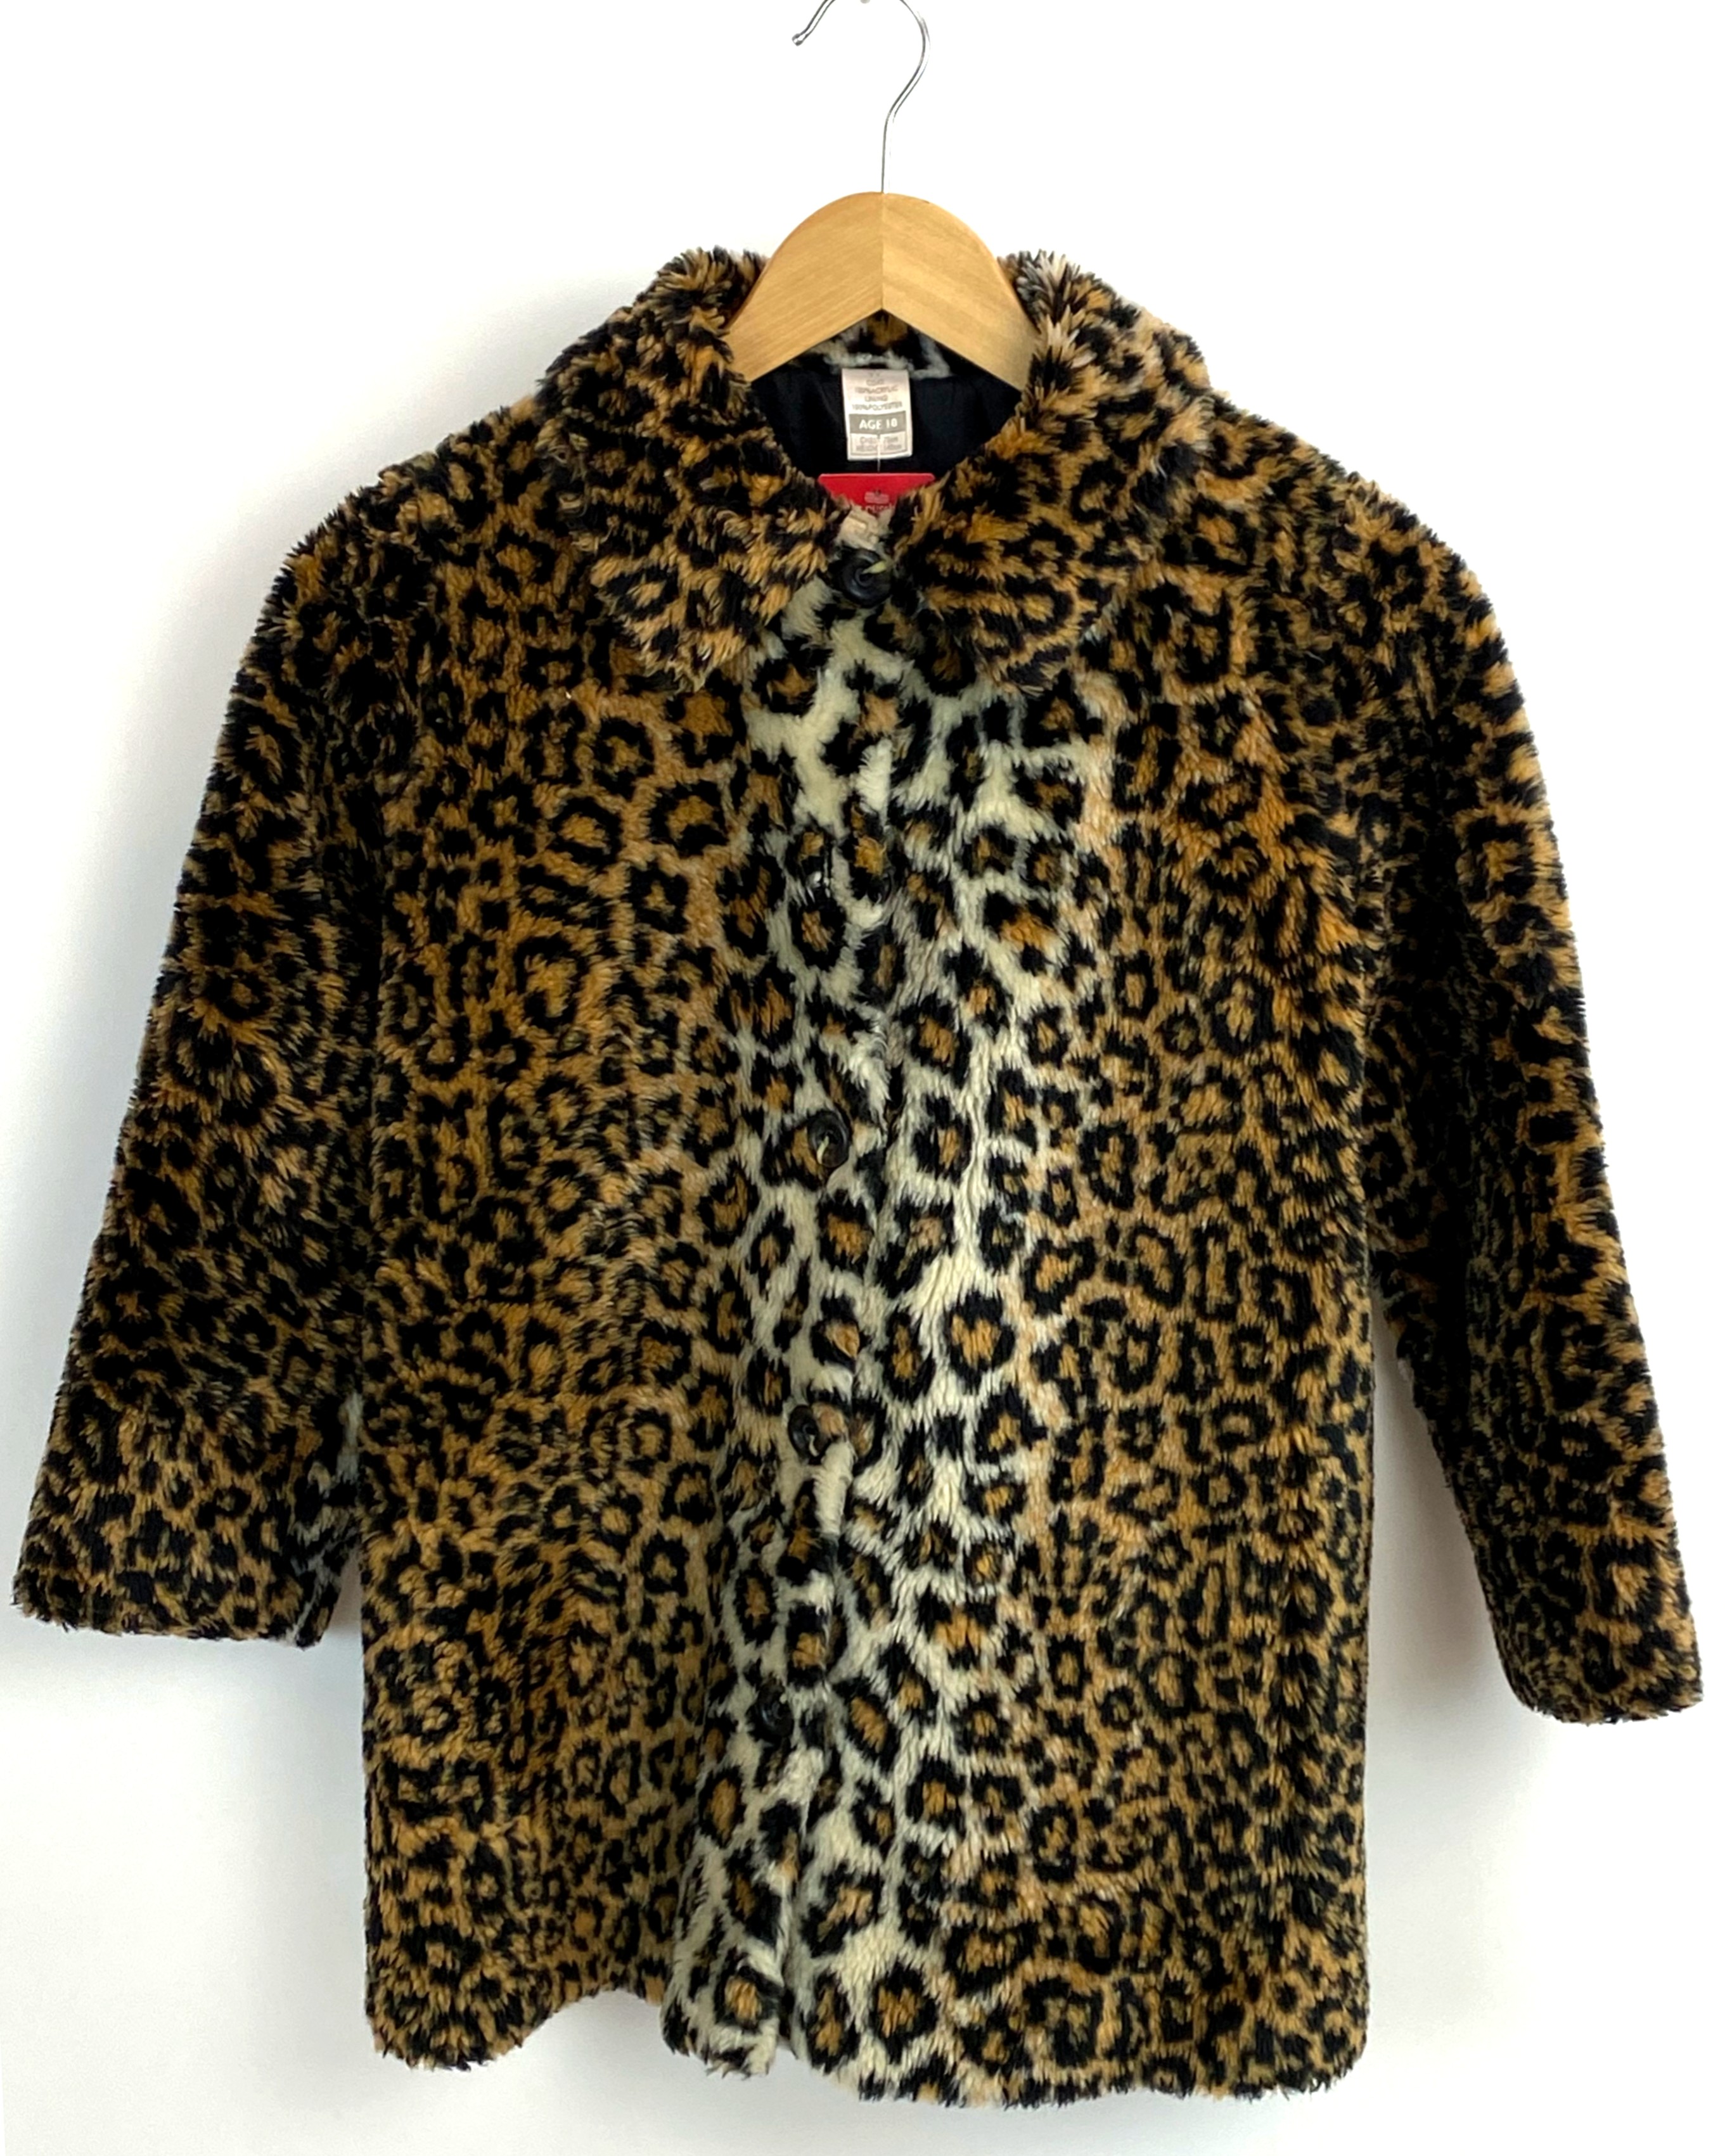 Kids vintage style faux fur leopard print coat